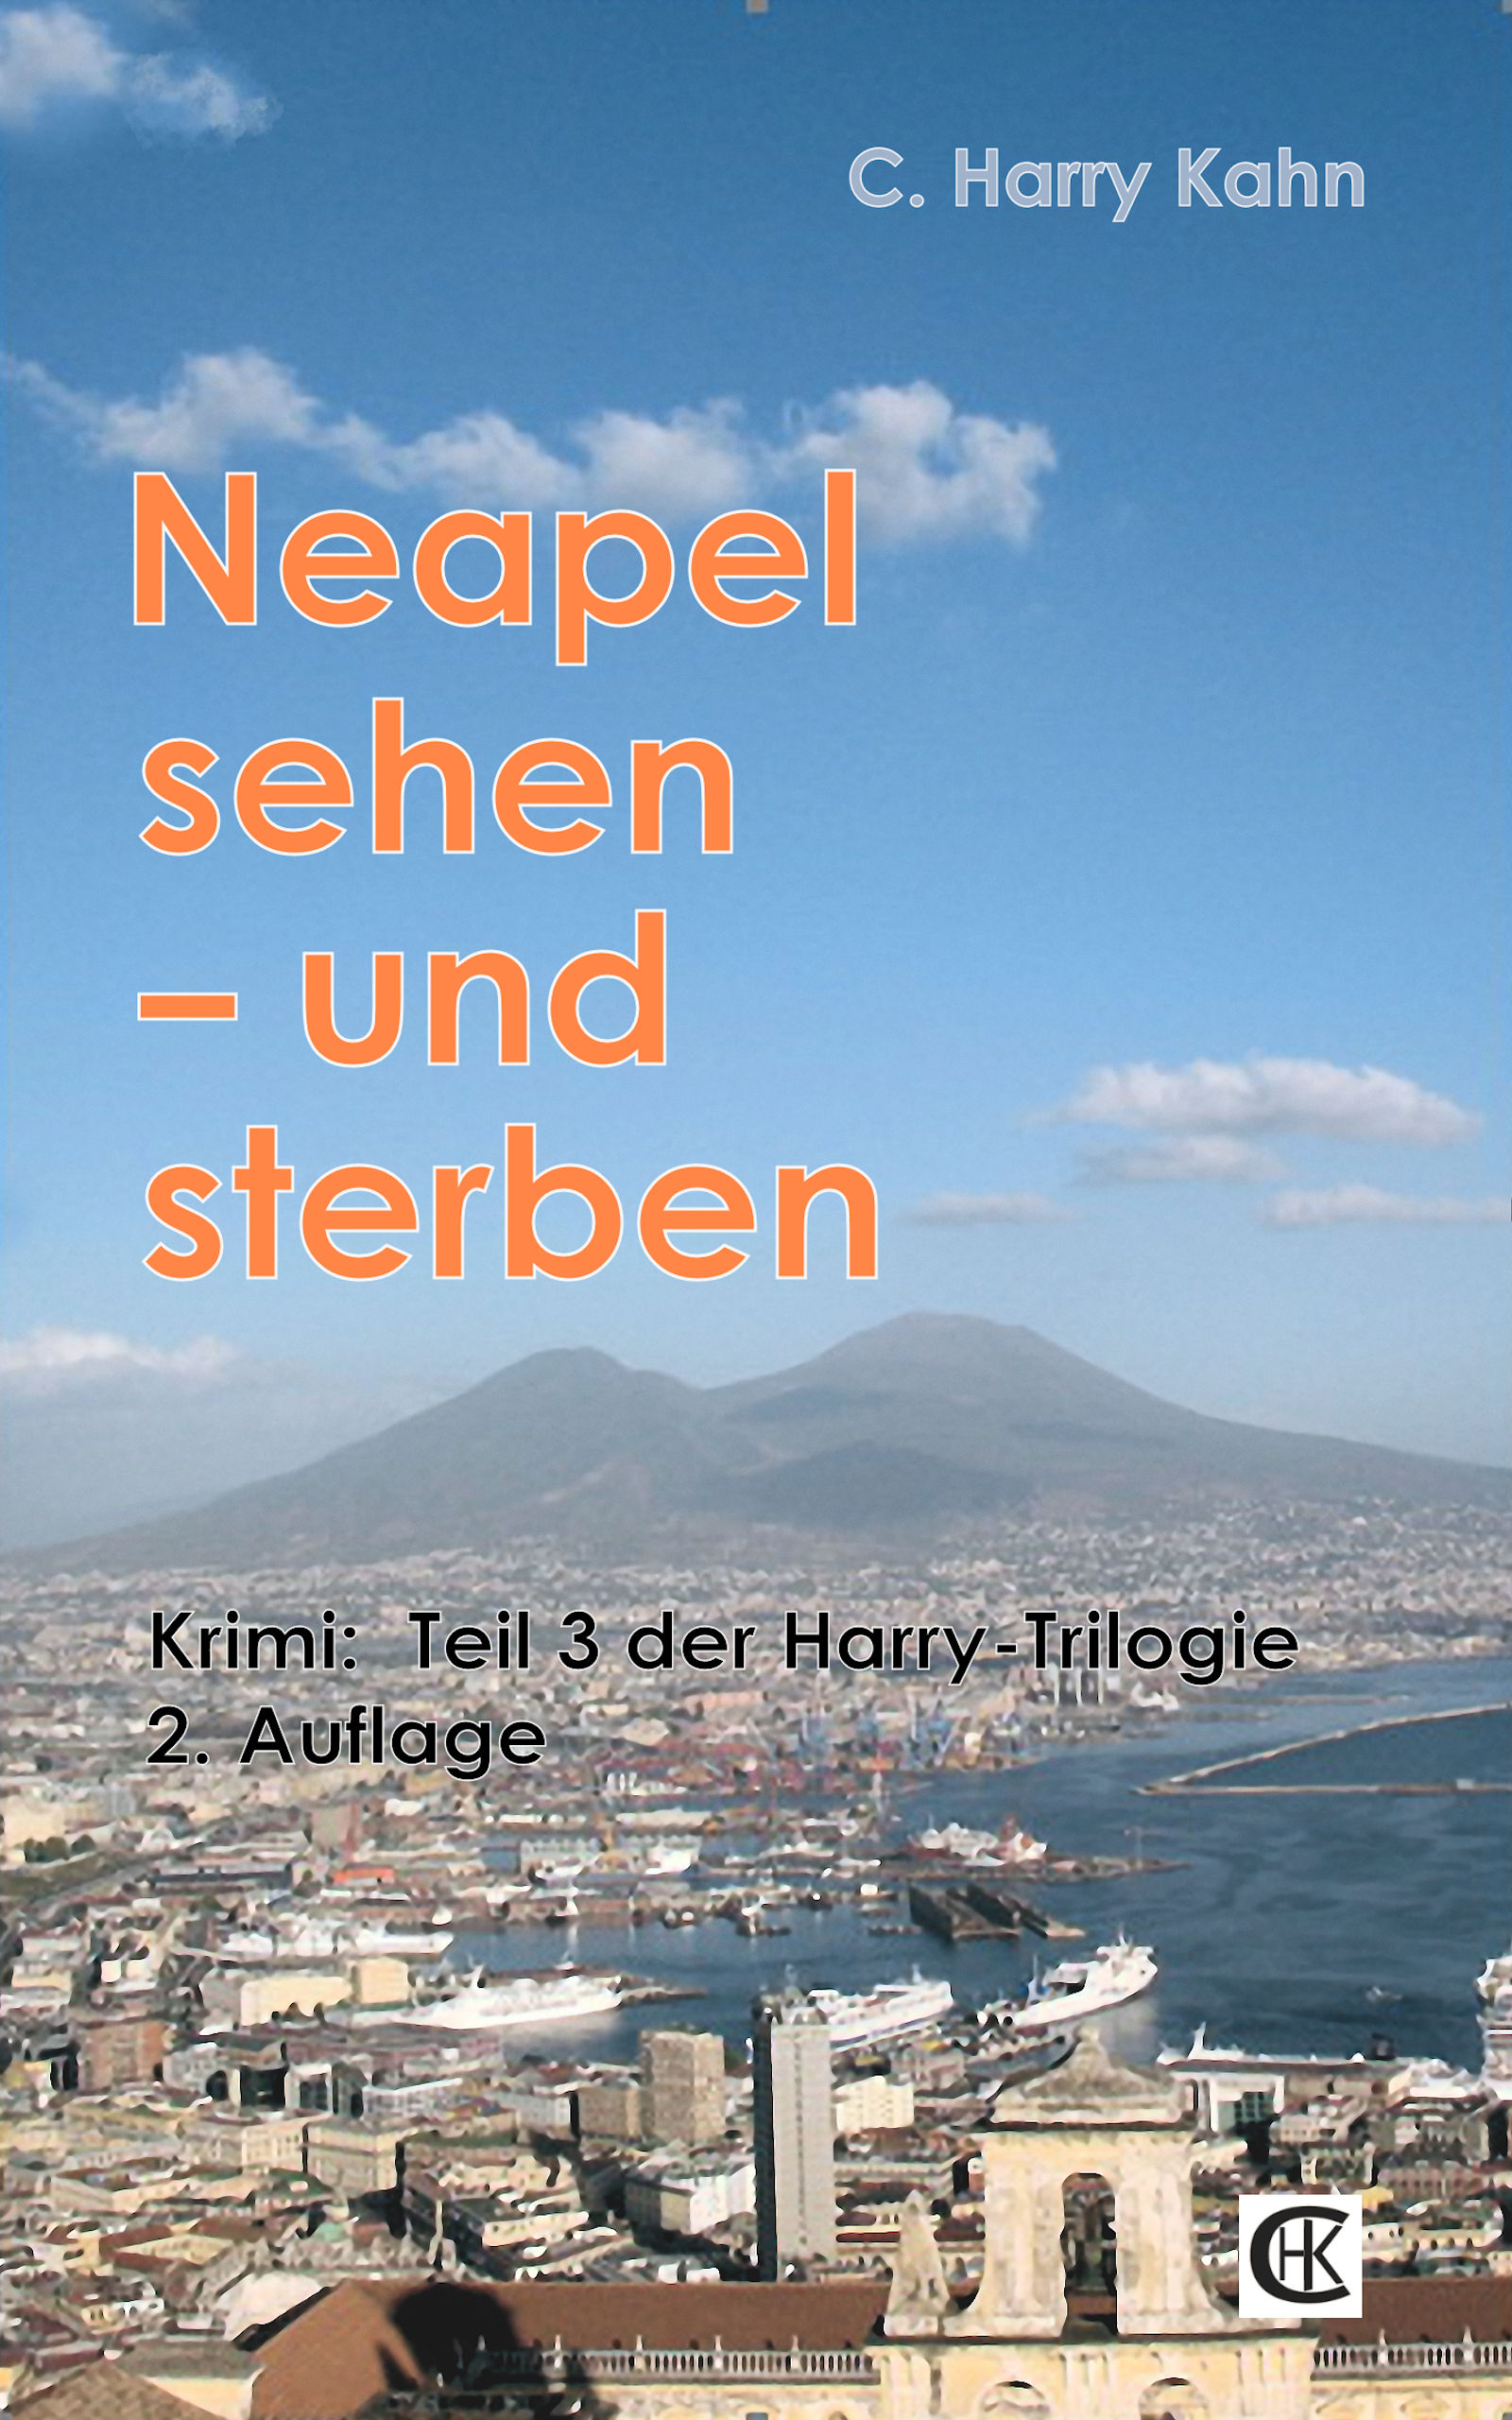 Neapel und Vesuv